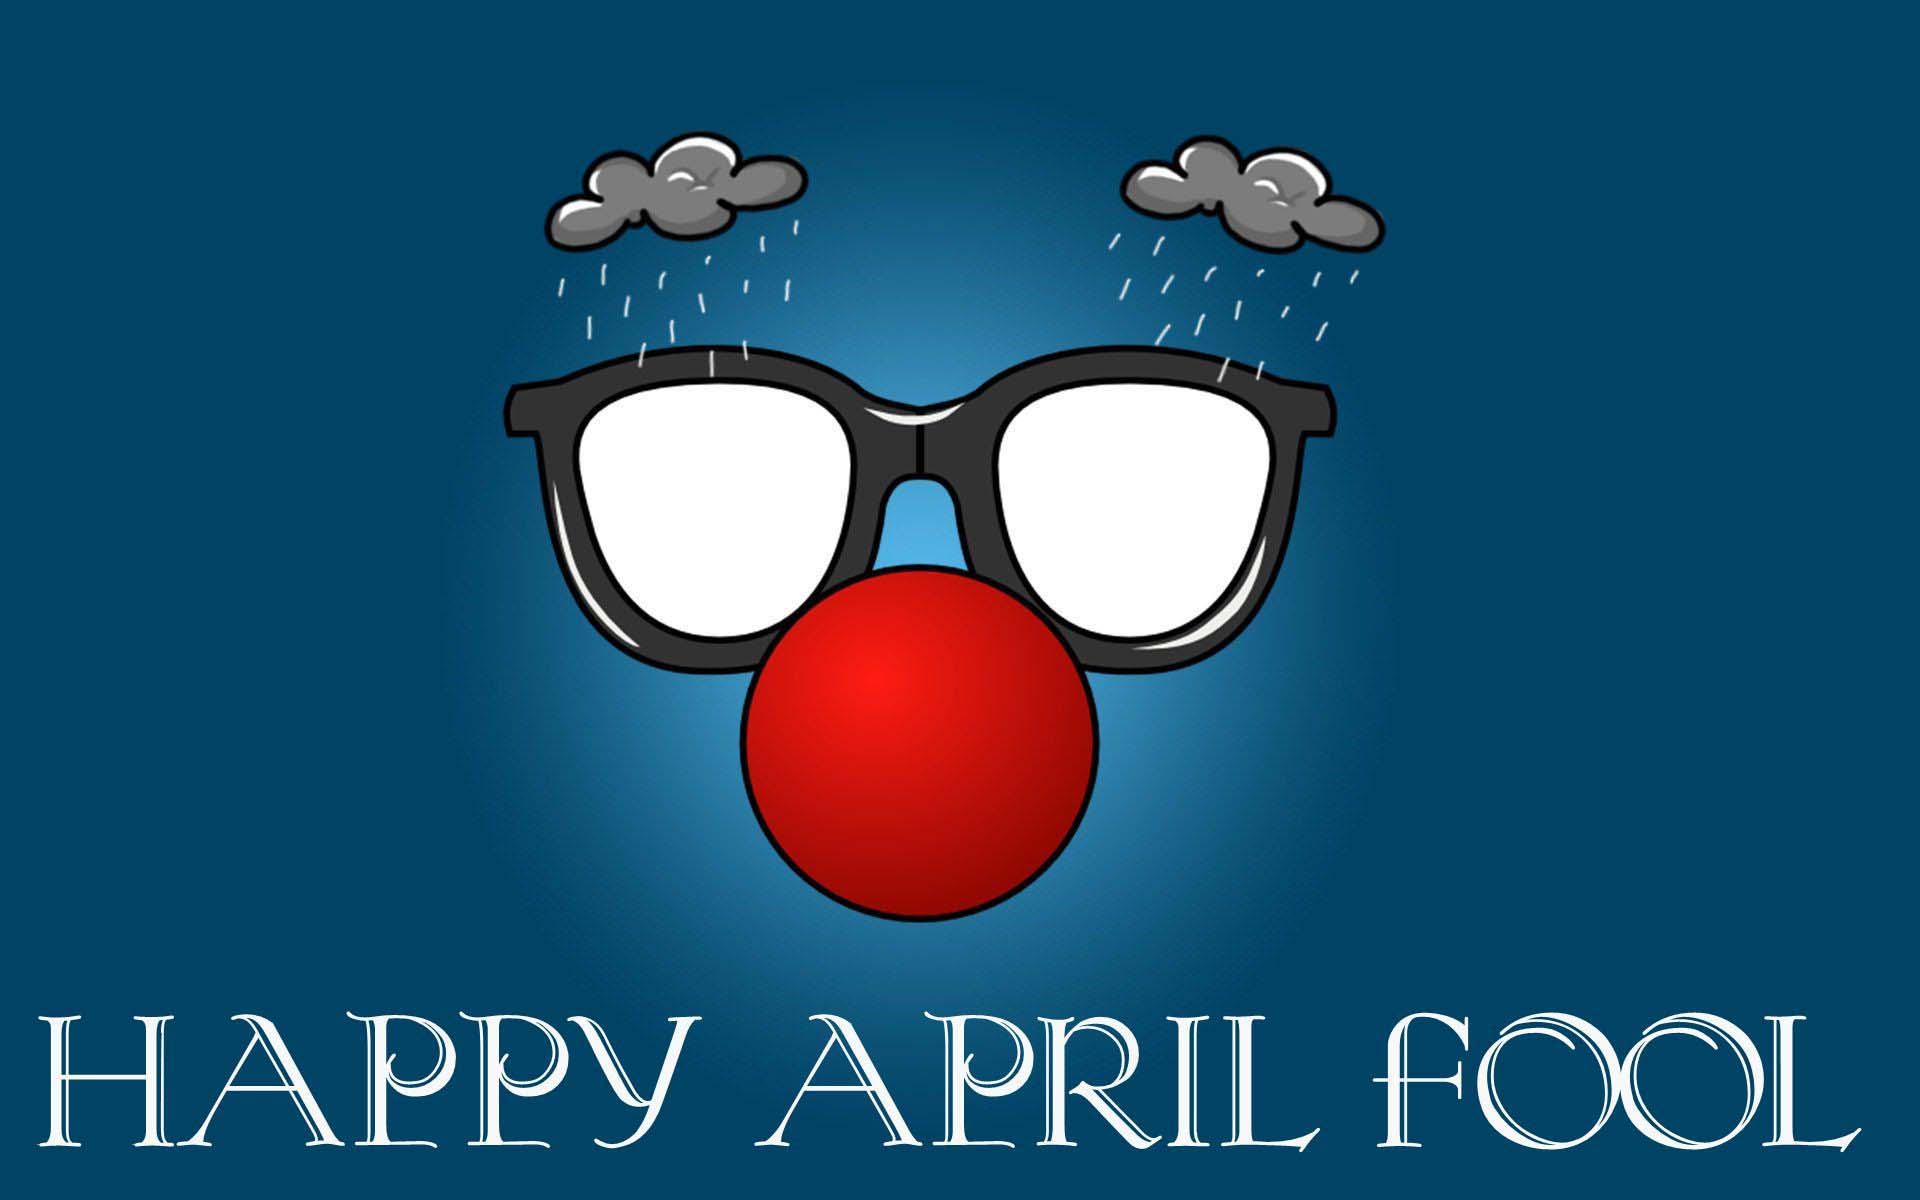 April Fool Wallpaper Download April Fool wallpaper Images 1920x1200